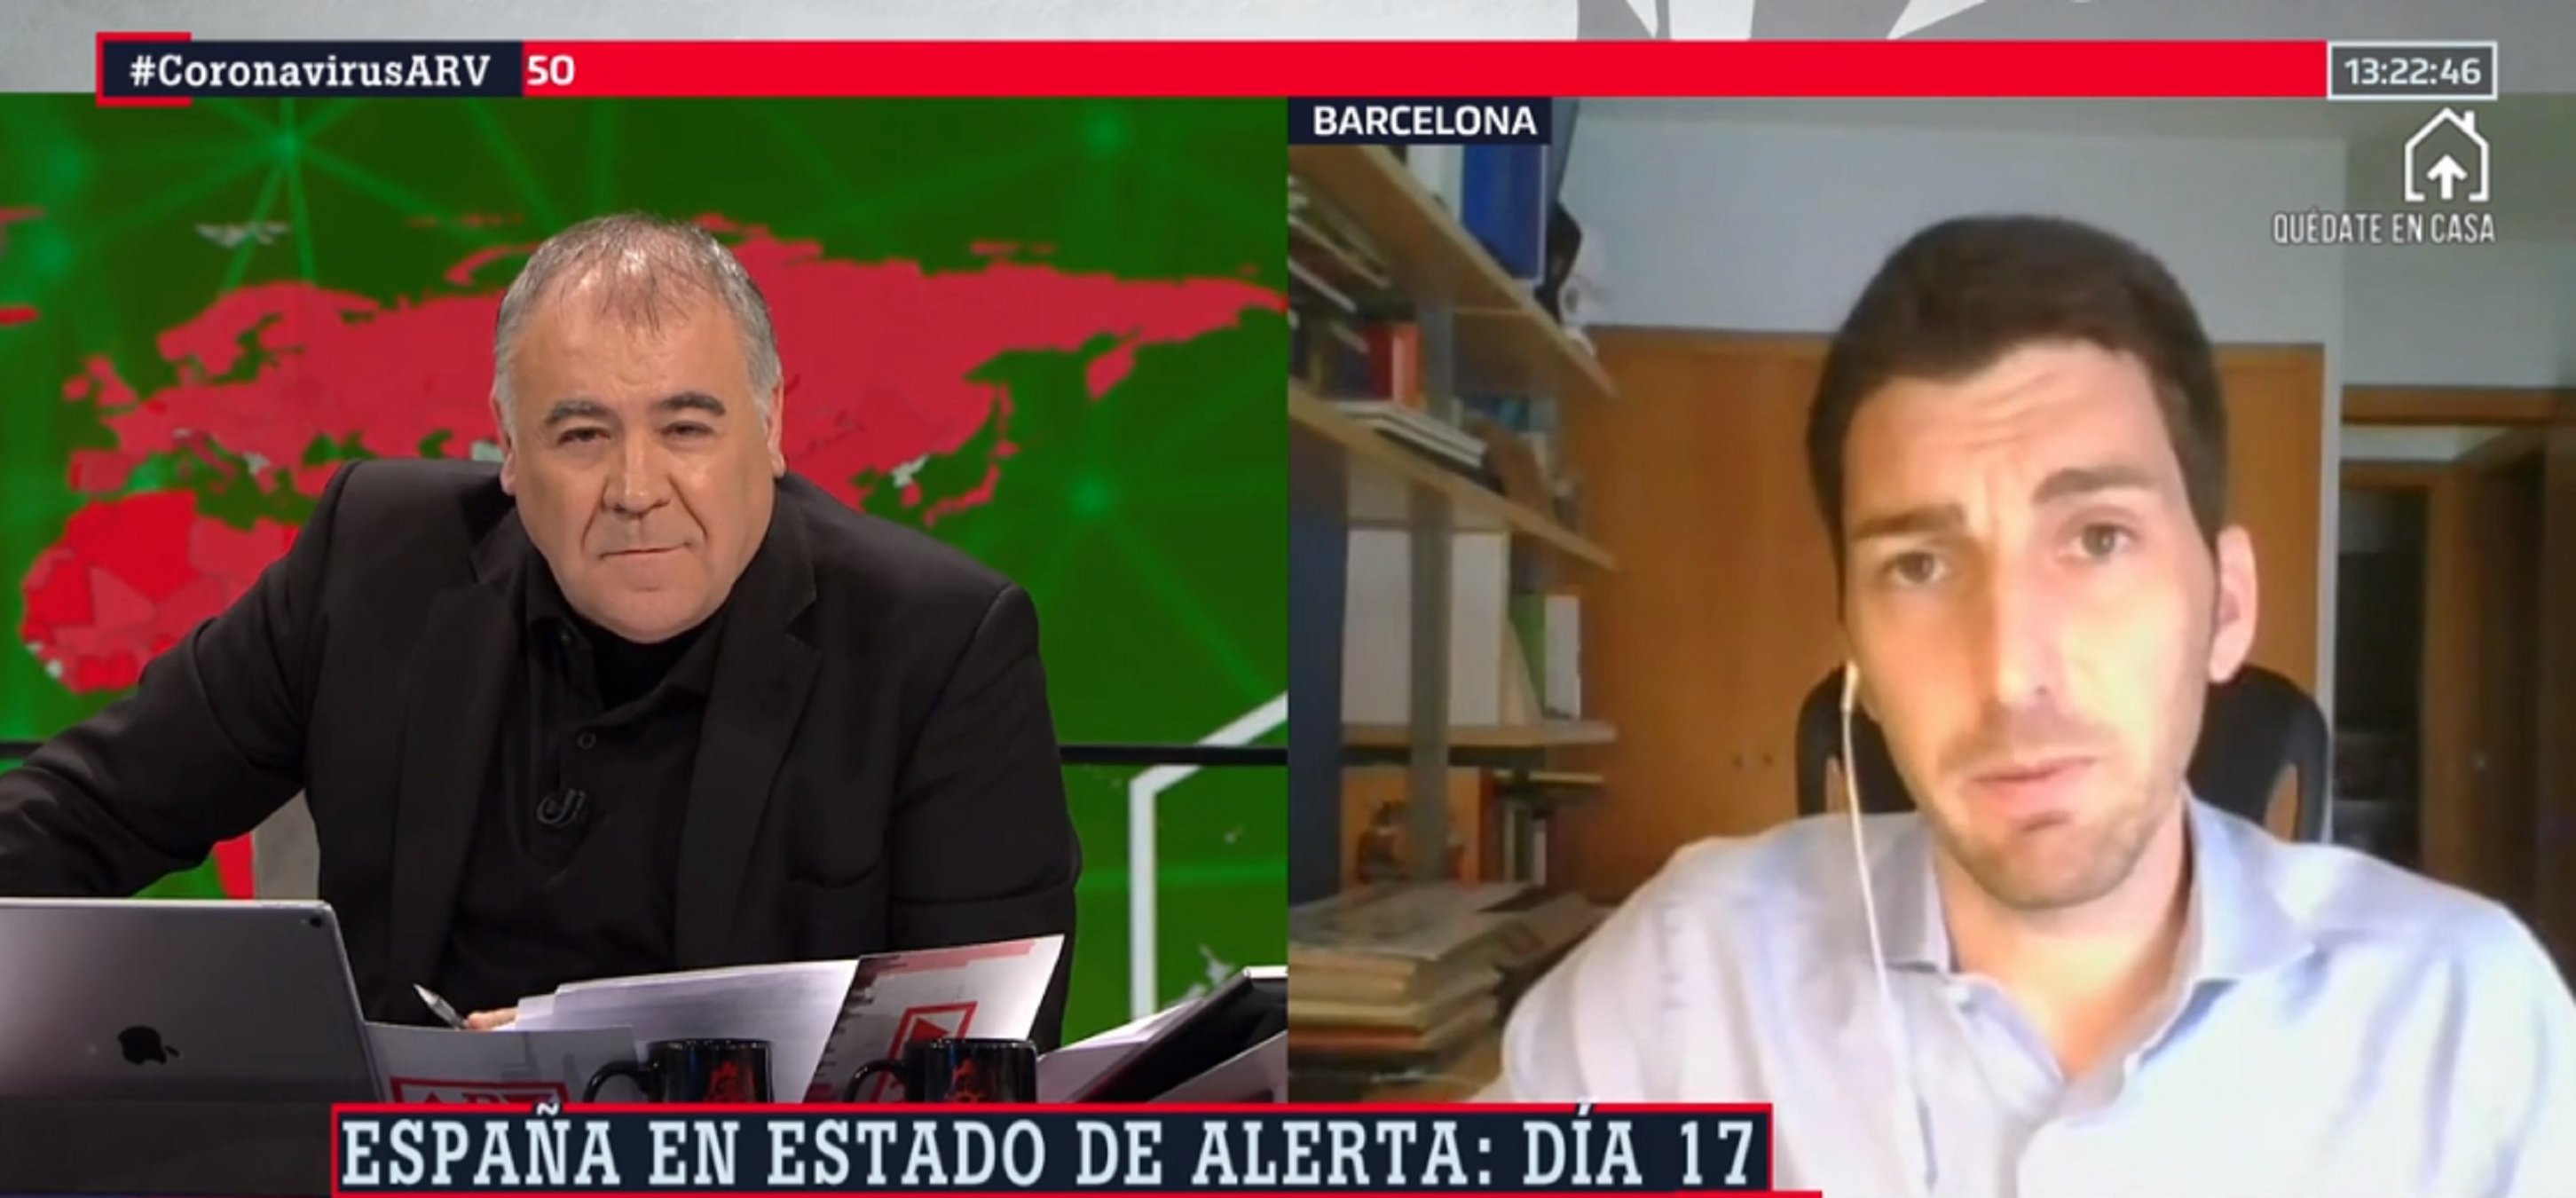 Oriol Mitjà fulmina Miquel Iceta i el PSC acusant-los de mentir sobre ell i TV3